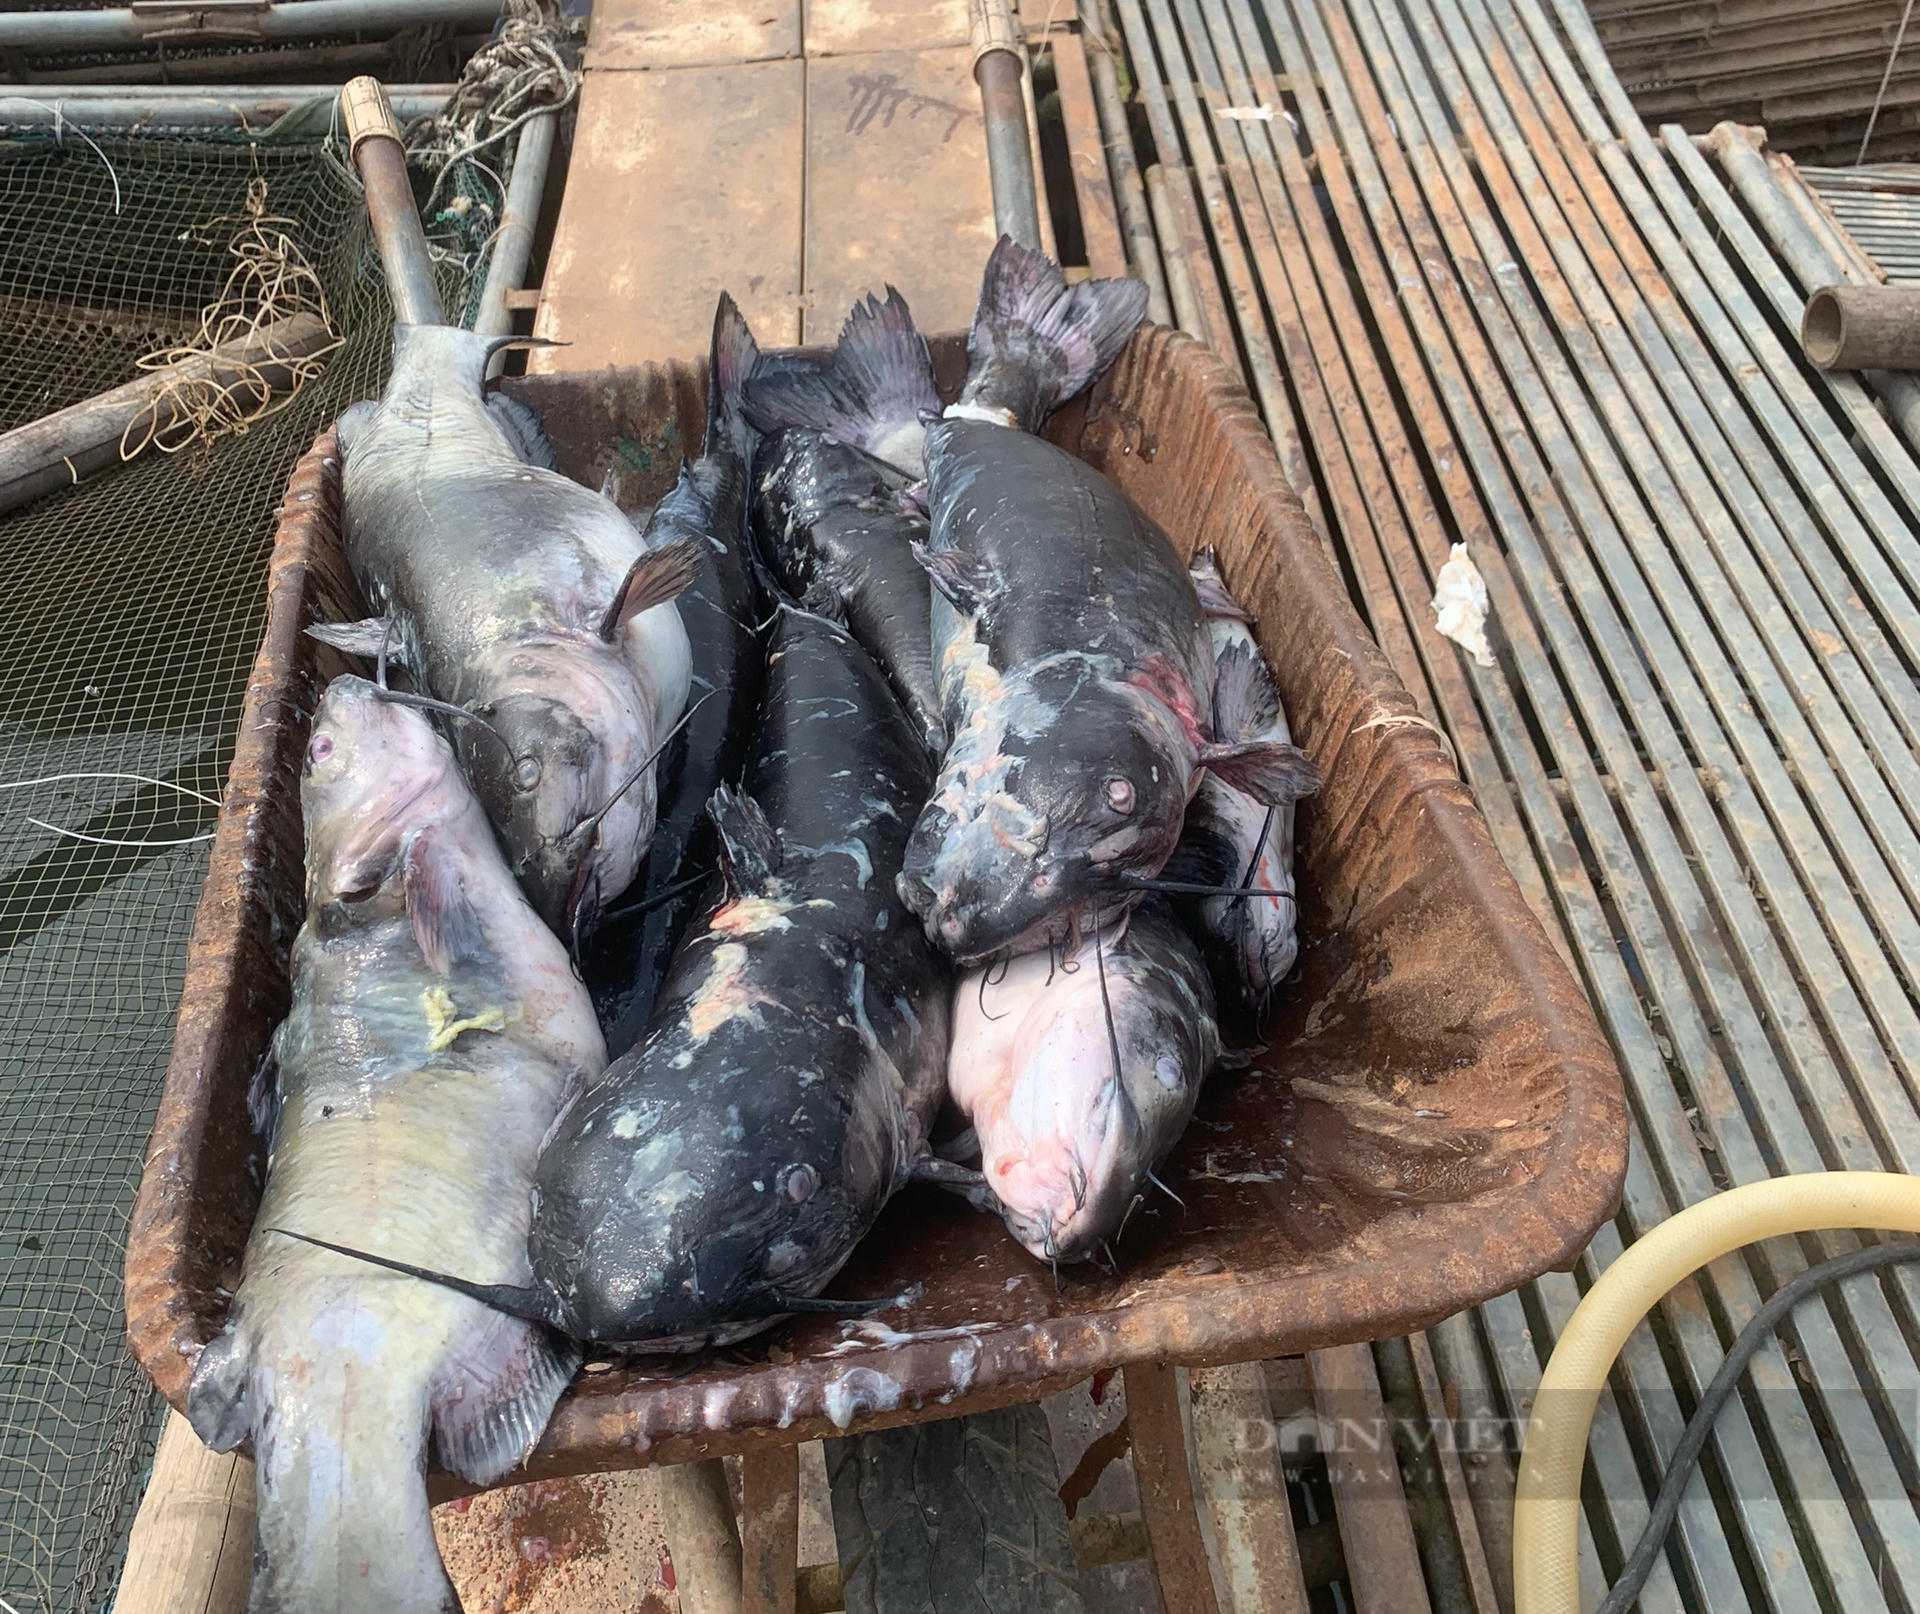 Nước sông Đà cạn đột ngột, người nuôi cá lồng thiệt hại hàng tỷ đồng - Ảnh 7.